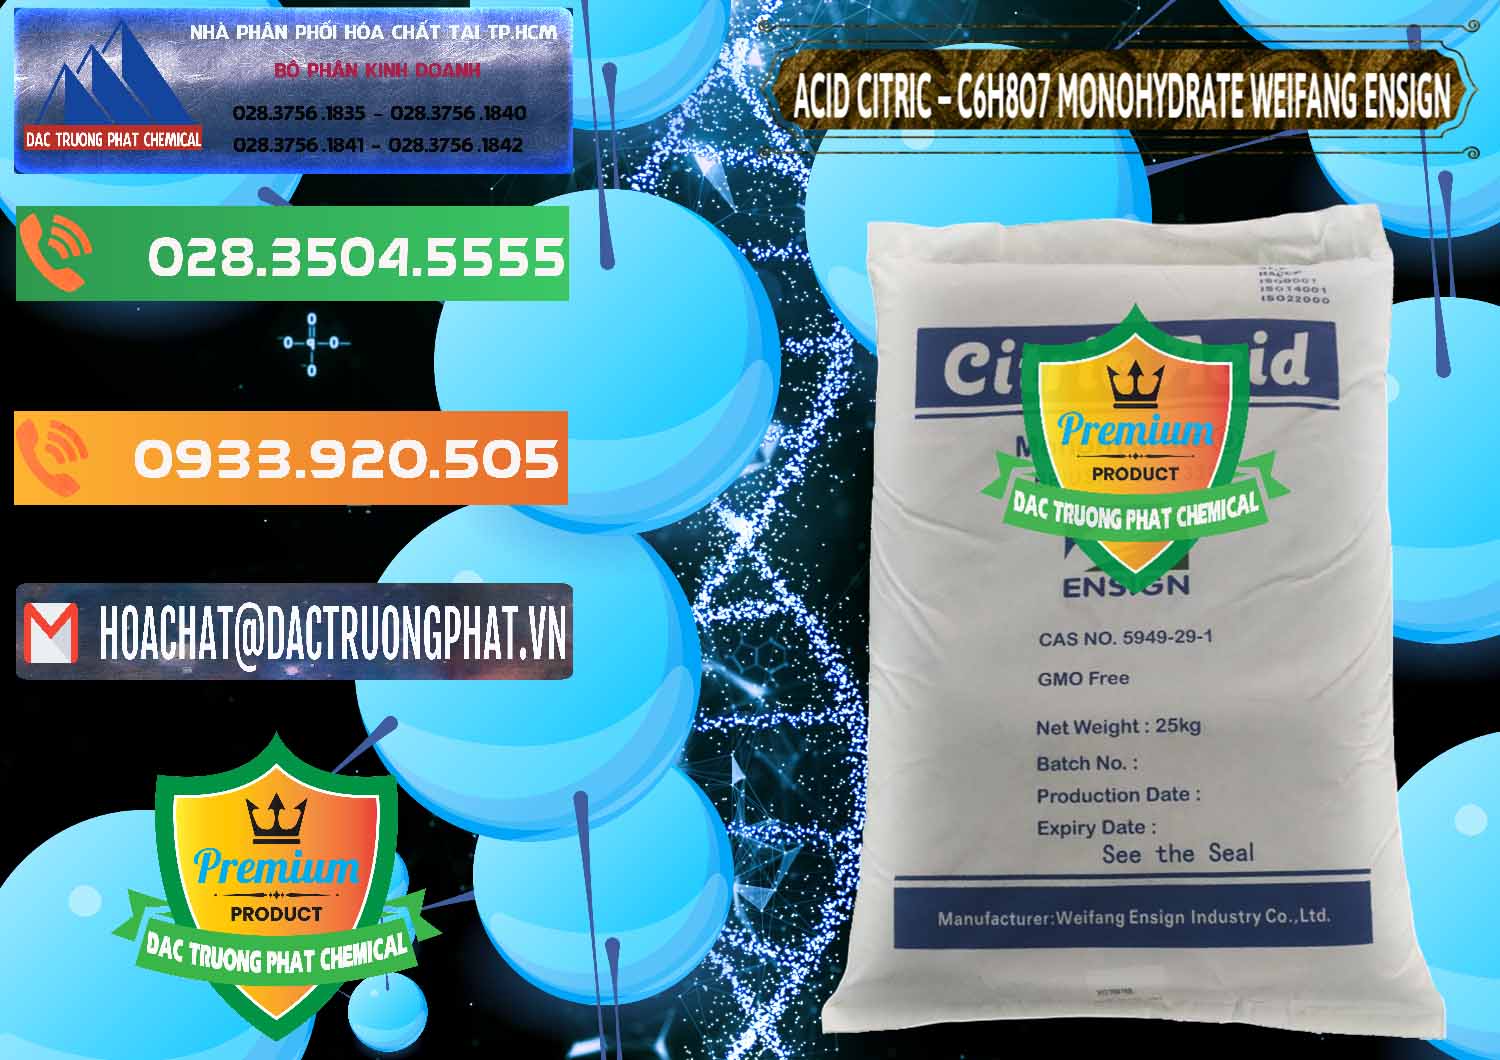 Bán & phân phối Acid Citric - Axit Citric Monohydrate Weifang Trung Quốc China - 0009 - Công ty chuyên cung cấp _ nhập khẩu hóa chất tại TP.HCM - hoachatxulynuoc.com.vn